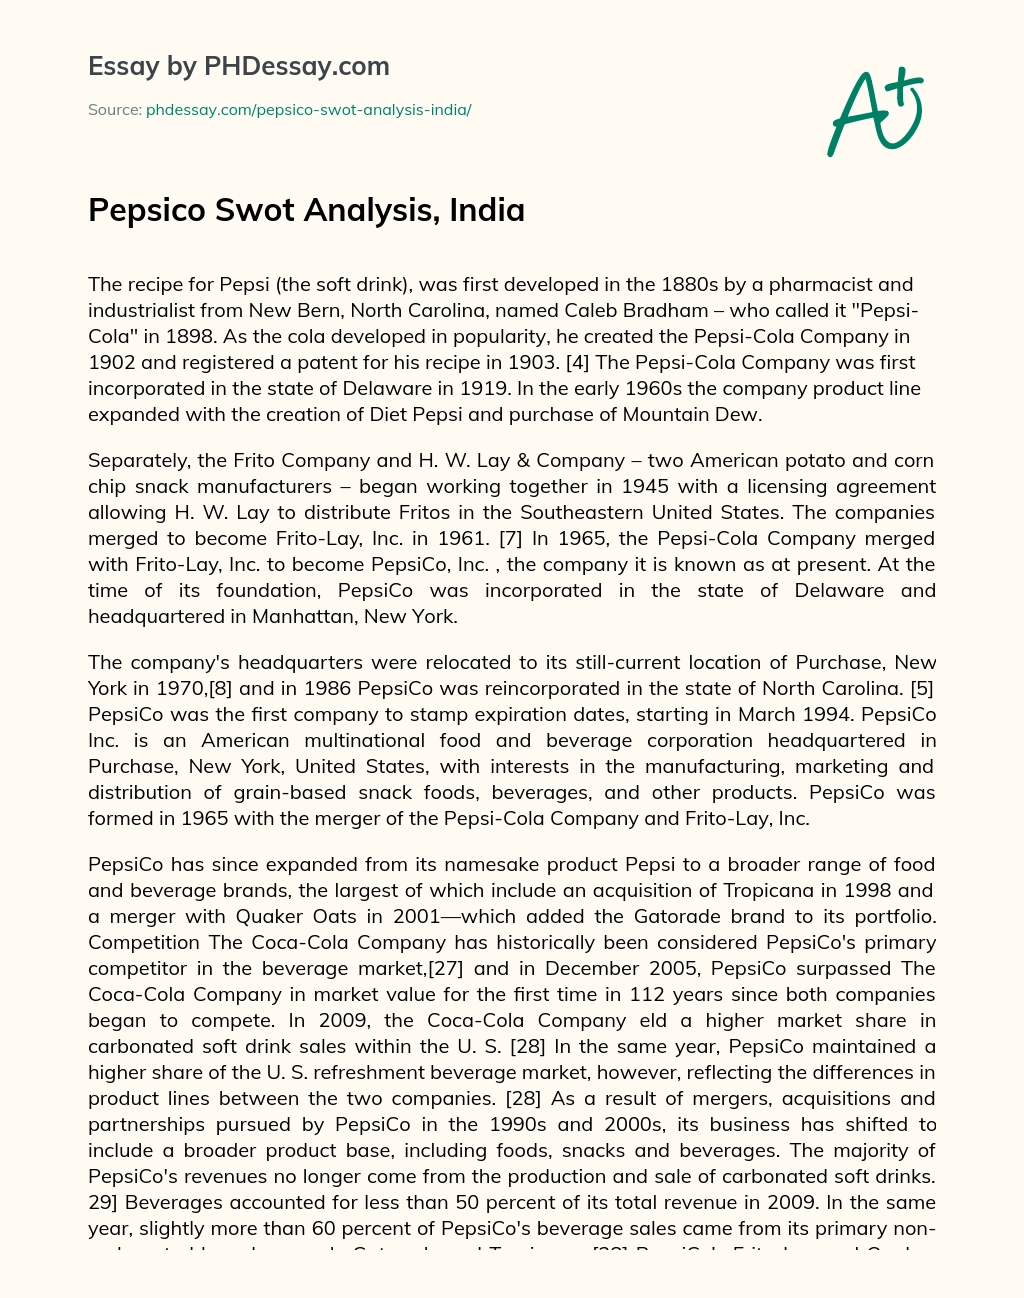 Pepsico Swot Analysis, India essay